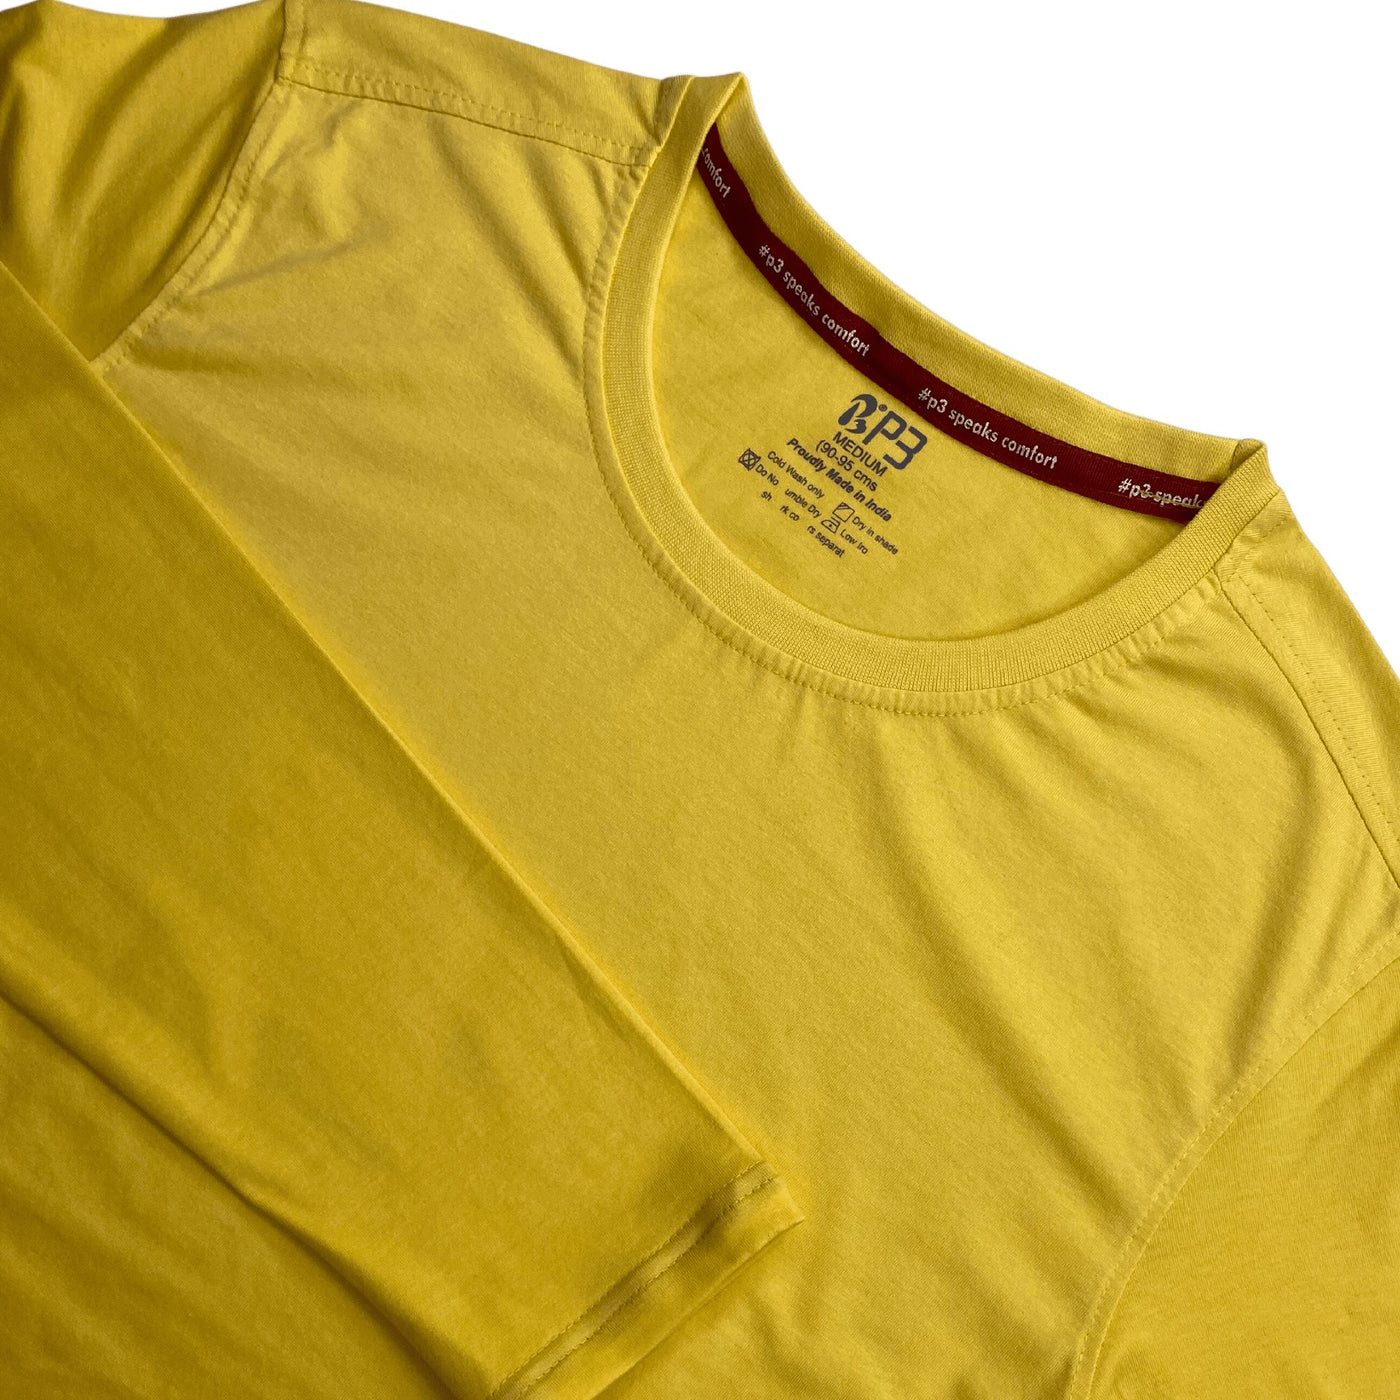 Essential Full Sleeve T-Shirt Crew Neck P3 Illuminating Small (80 cm- 85 cm) 